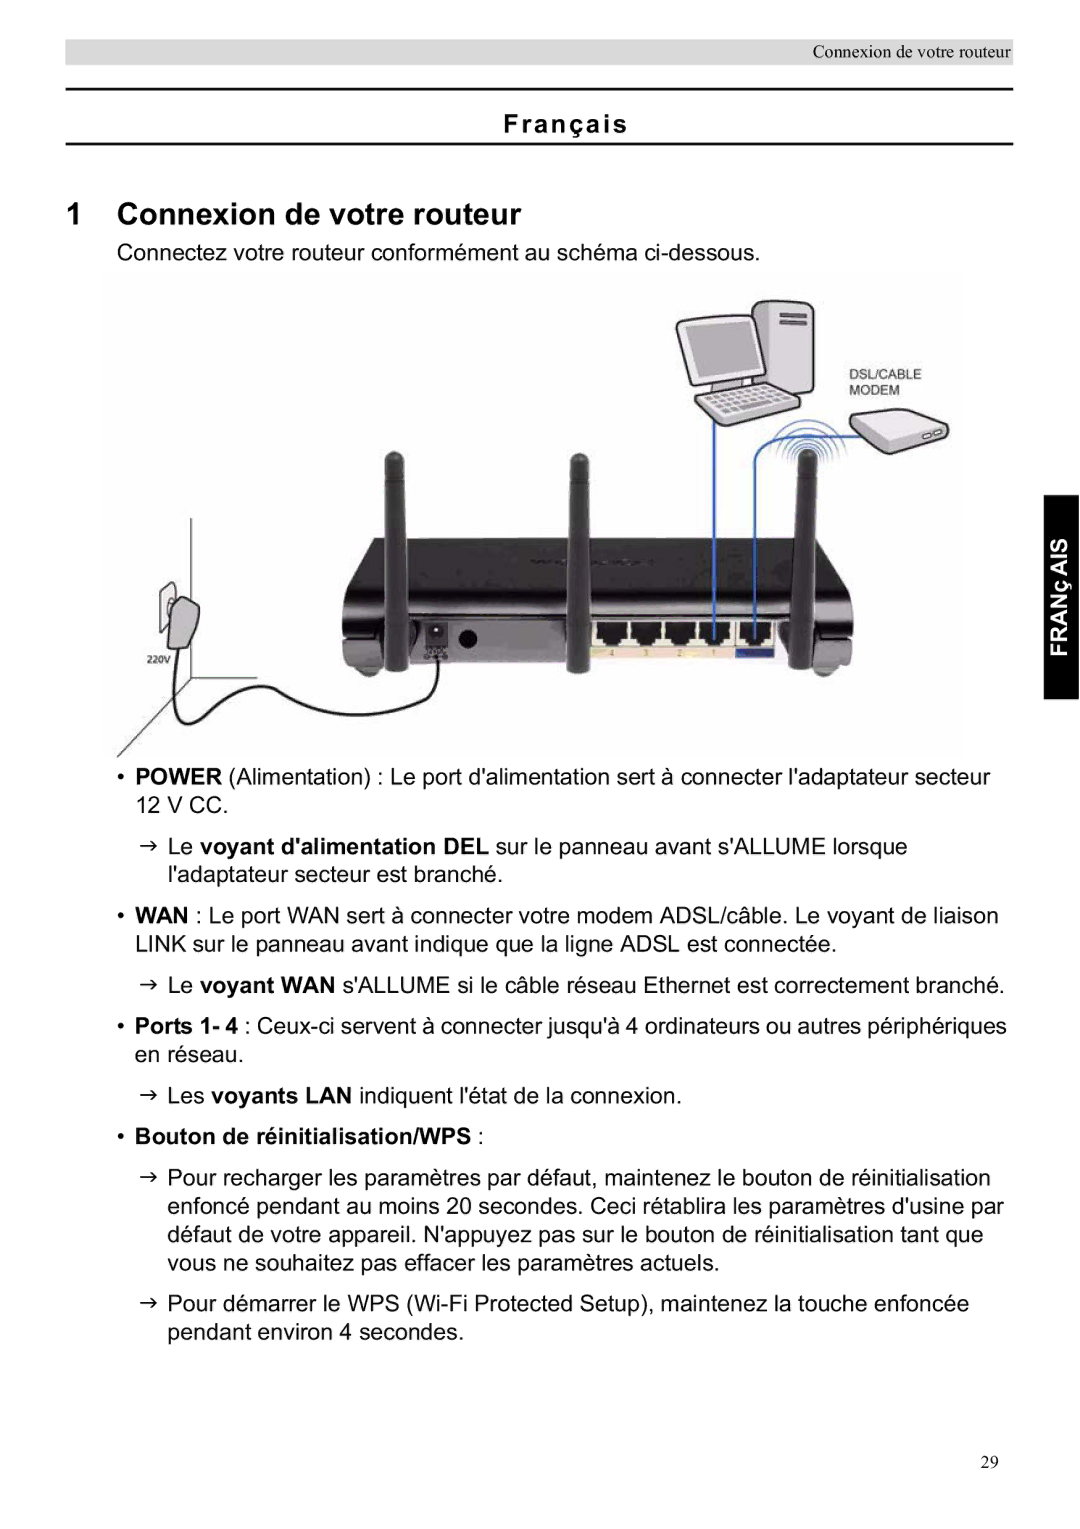 Topcom WBR 7201 N manual Connexion de votre routeur, Français, Bouton de réinitialisation/WPS 